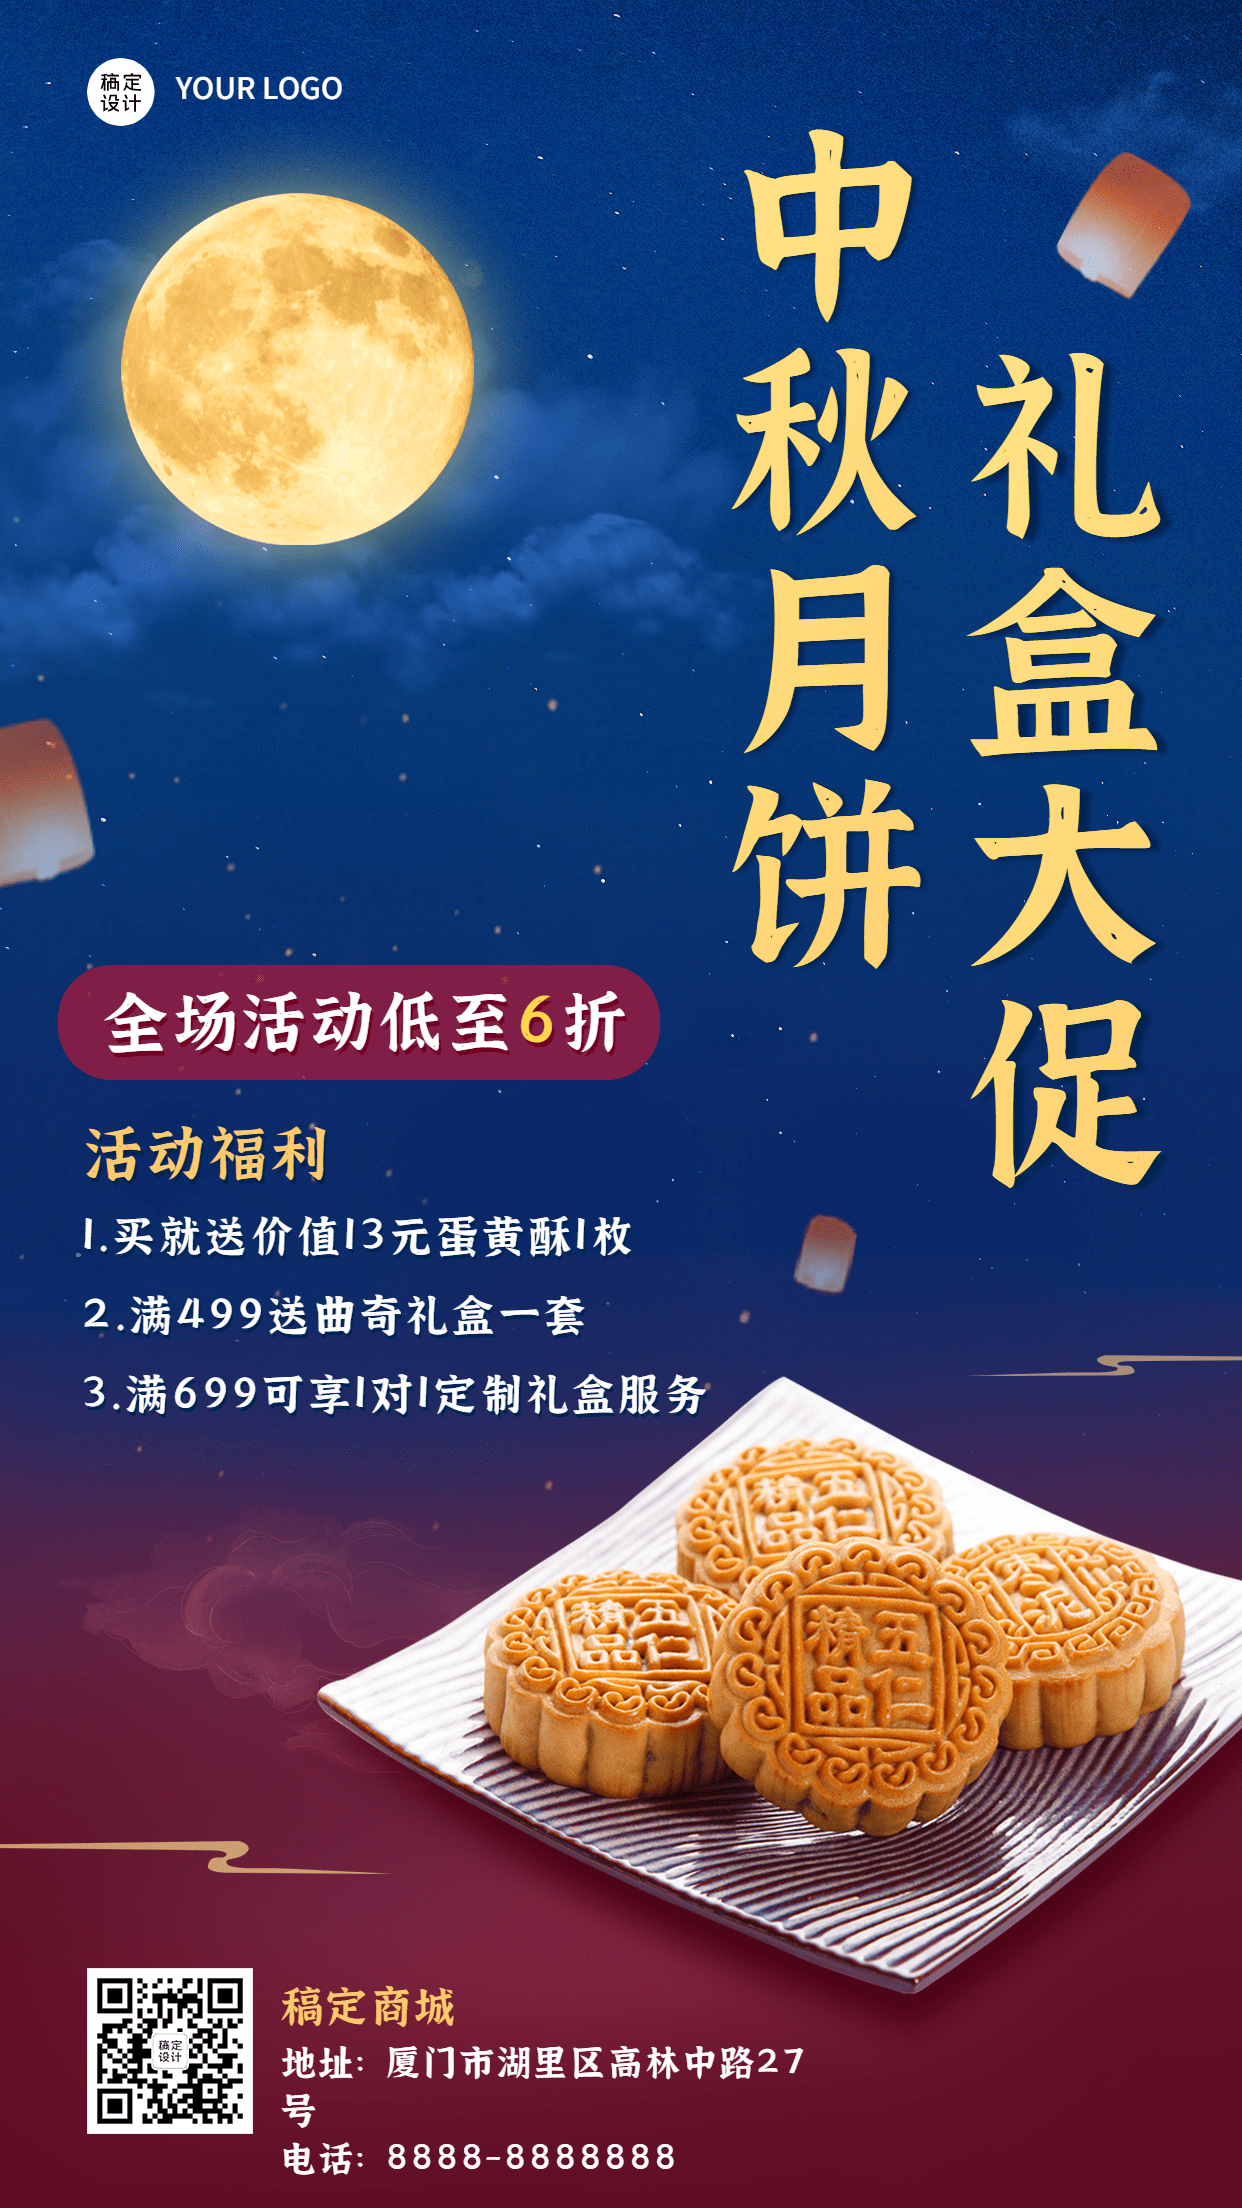 中秋促销月饼活动手机海报预览效果